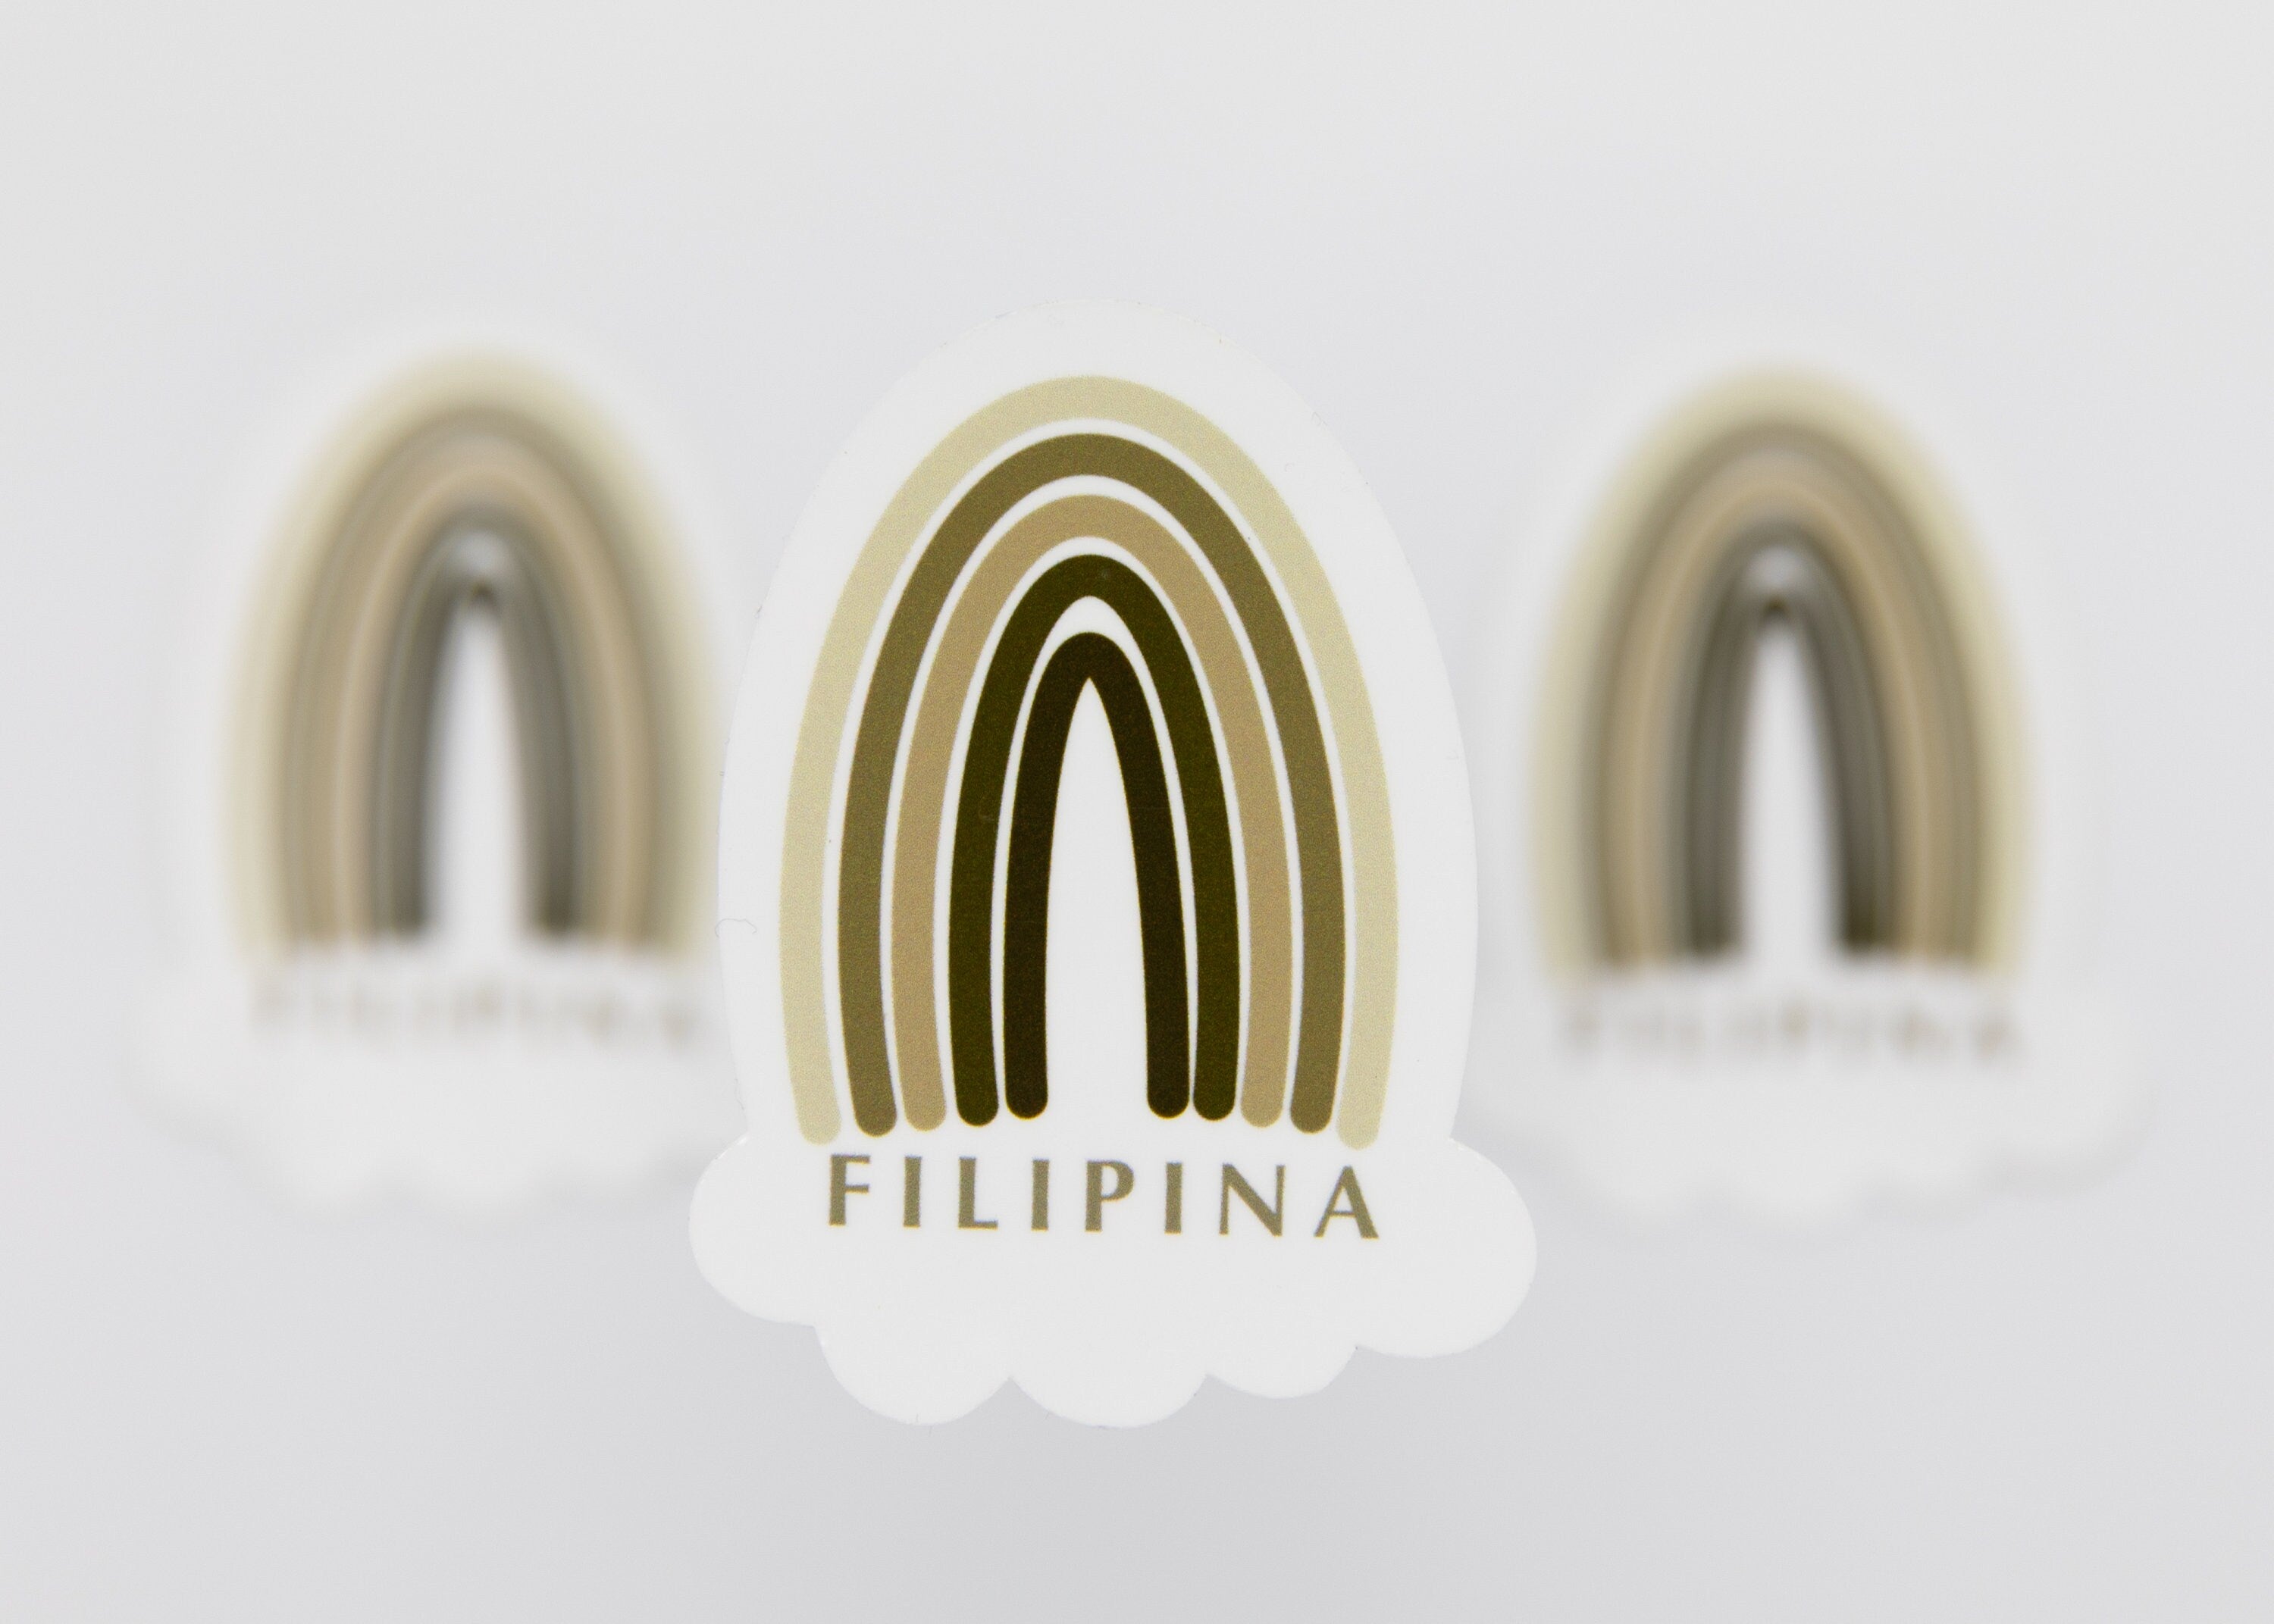 Mie Makes Filipina Sticker, Filipina Rainbow Sticker, Filipina Sticker, Filipino Sticker, Pinay Sticker, Filipina Decal, Philippines, Pinay Rainbow